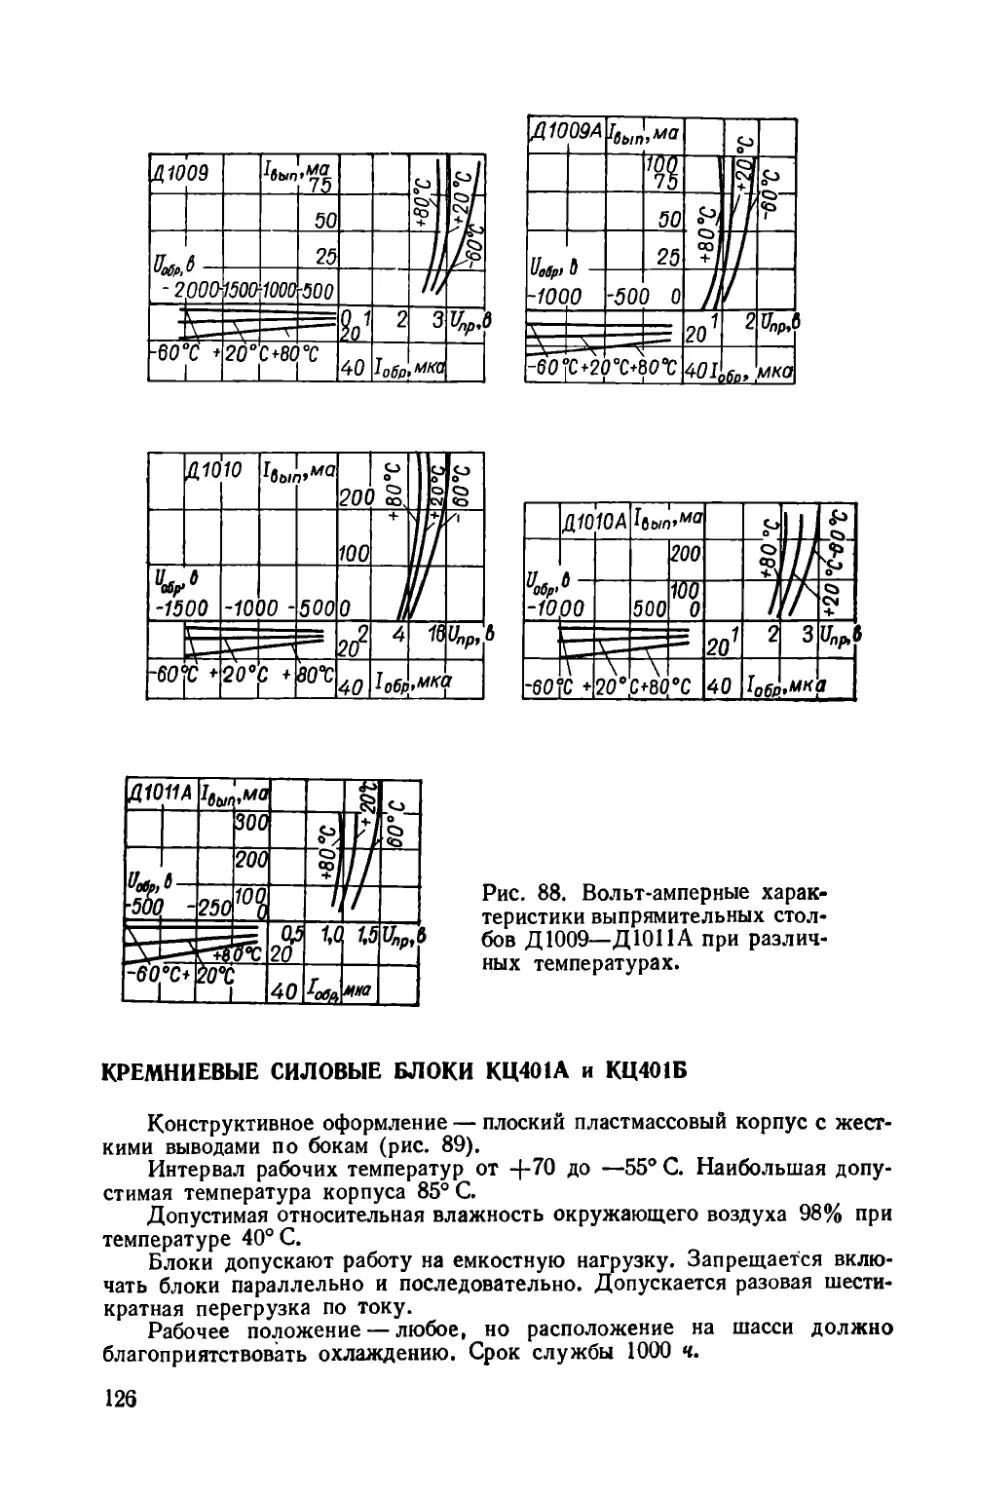 Кремниевые силовые блоки КЦ401А — КЦ401Б